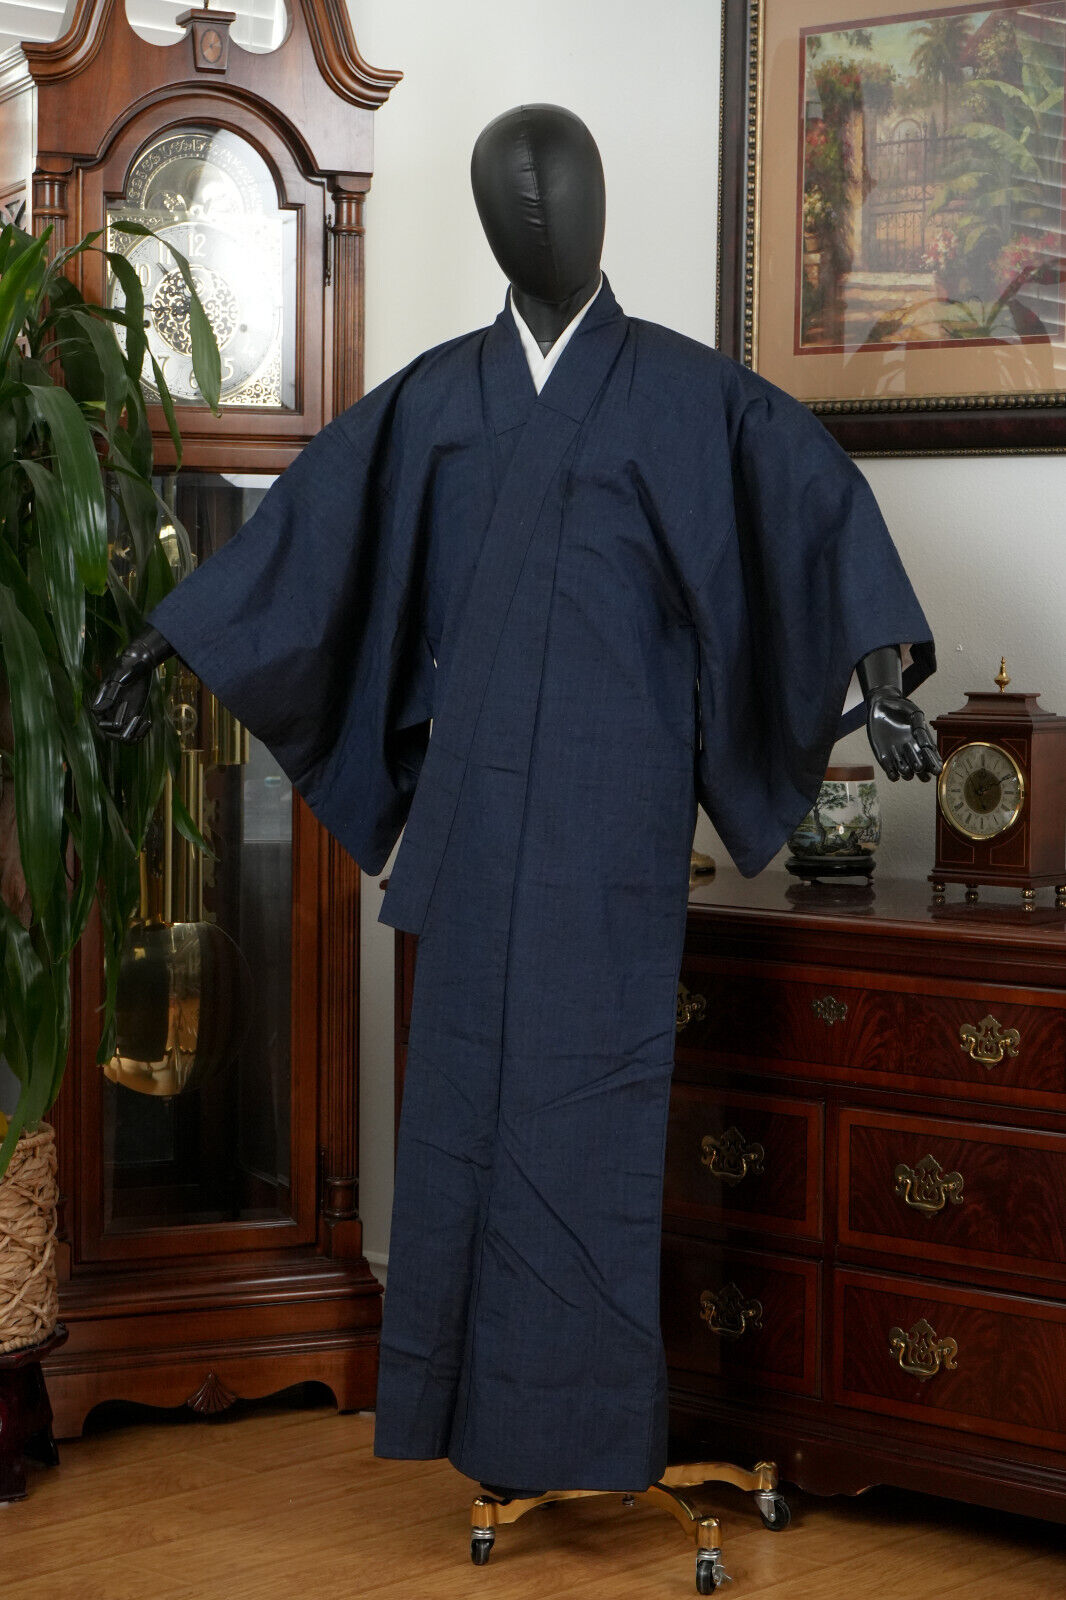 DEAR VANILLA JAPANESE KIMONO MEN'S ROBE GOWN AUTHENTIC JAPAN VINTAGE SAMURAI